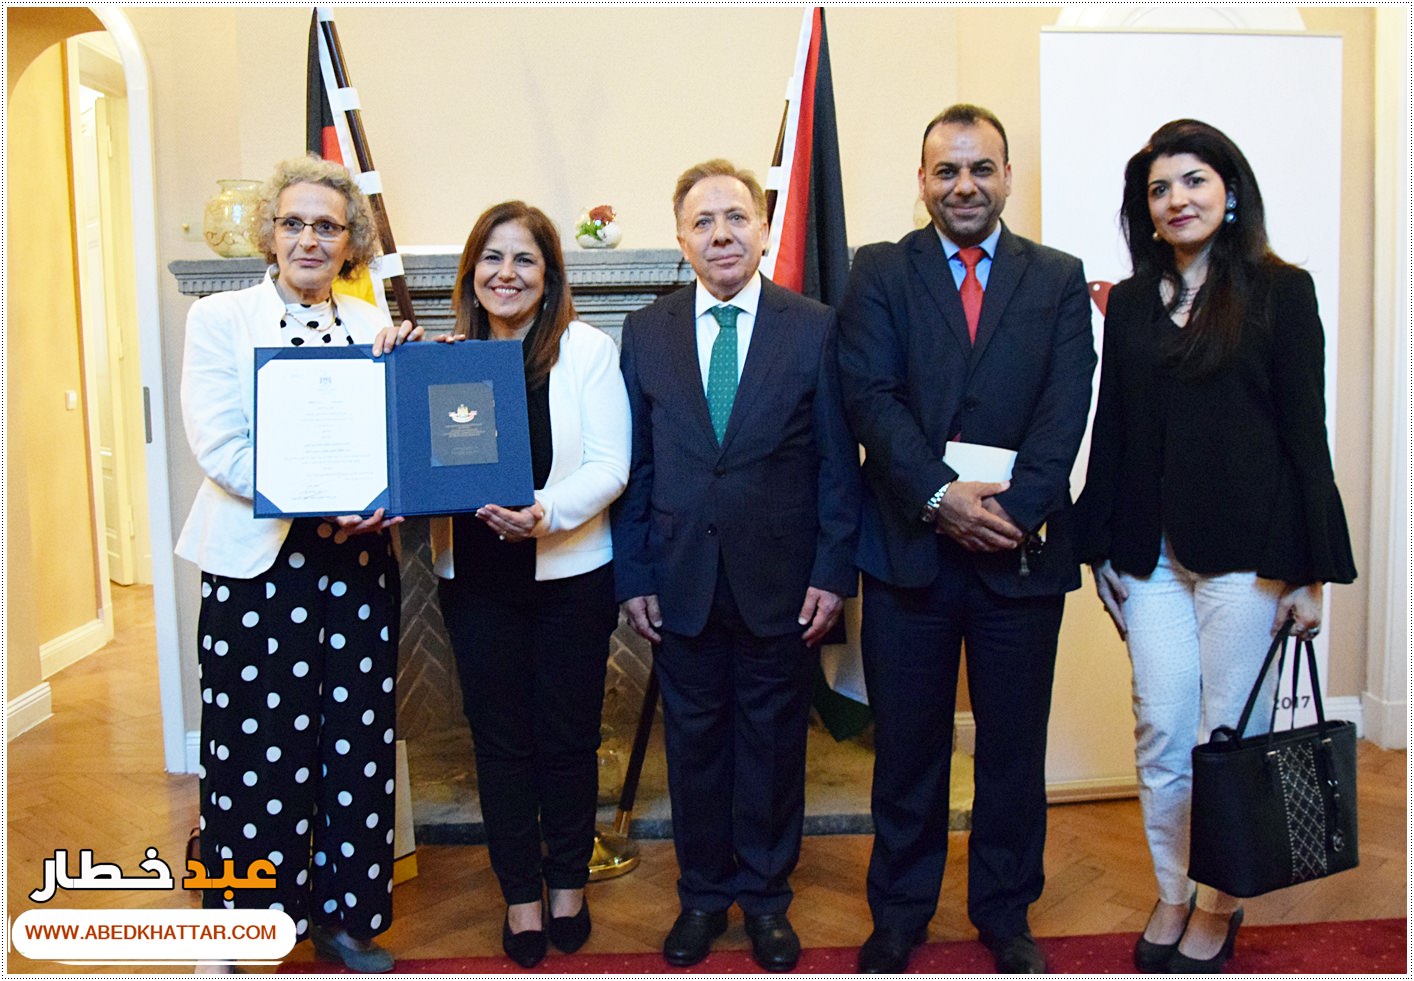 السيد الرئيس محمود عباس يمنح الشاعر والفنان العراقي مؤيد الراوي وسام الثقافة والعلوم والفنون